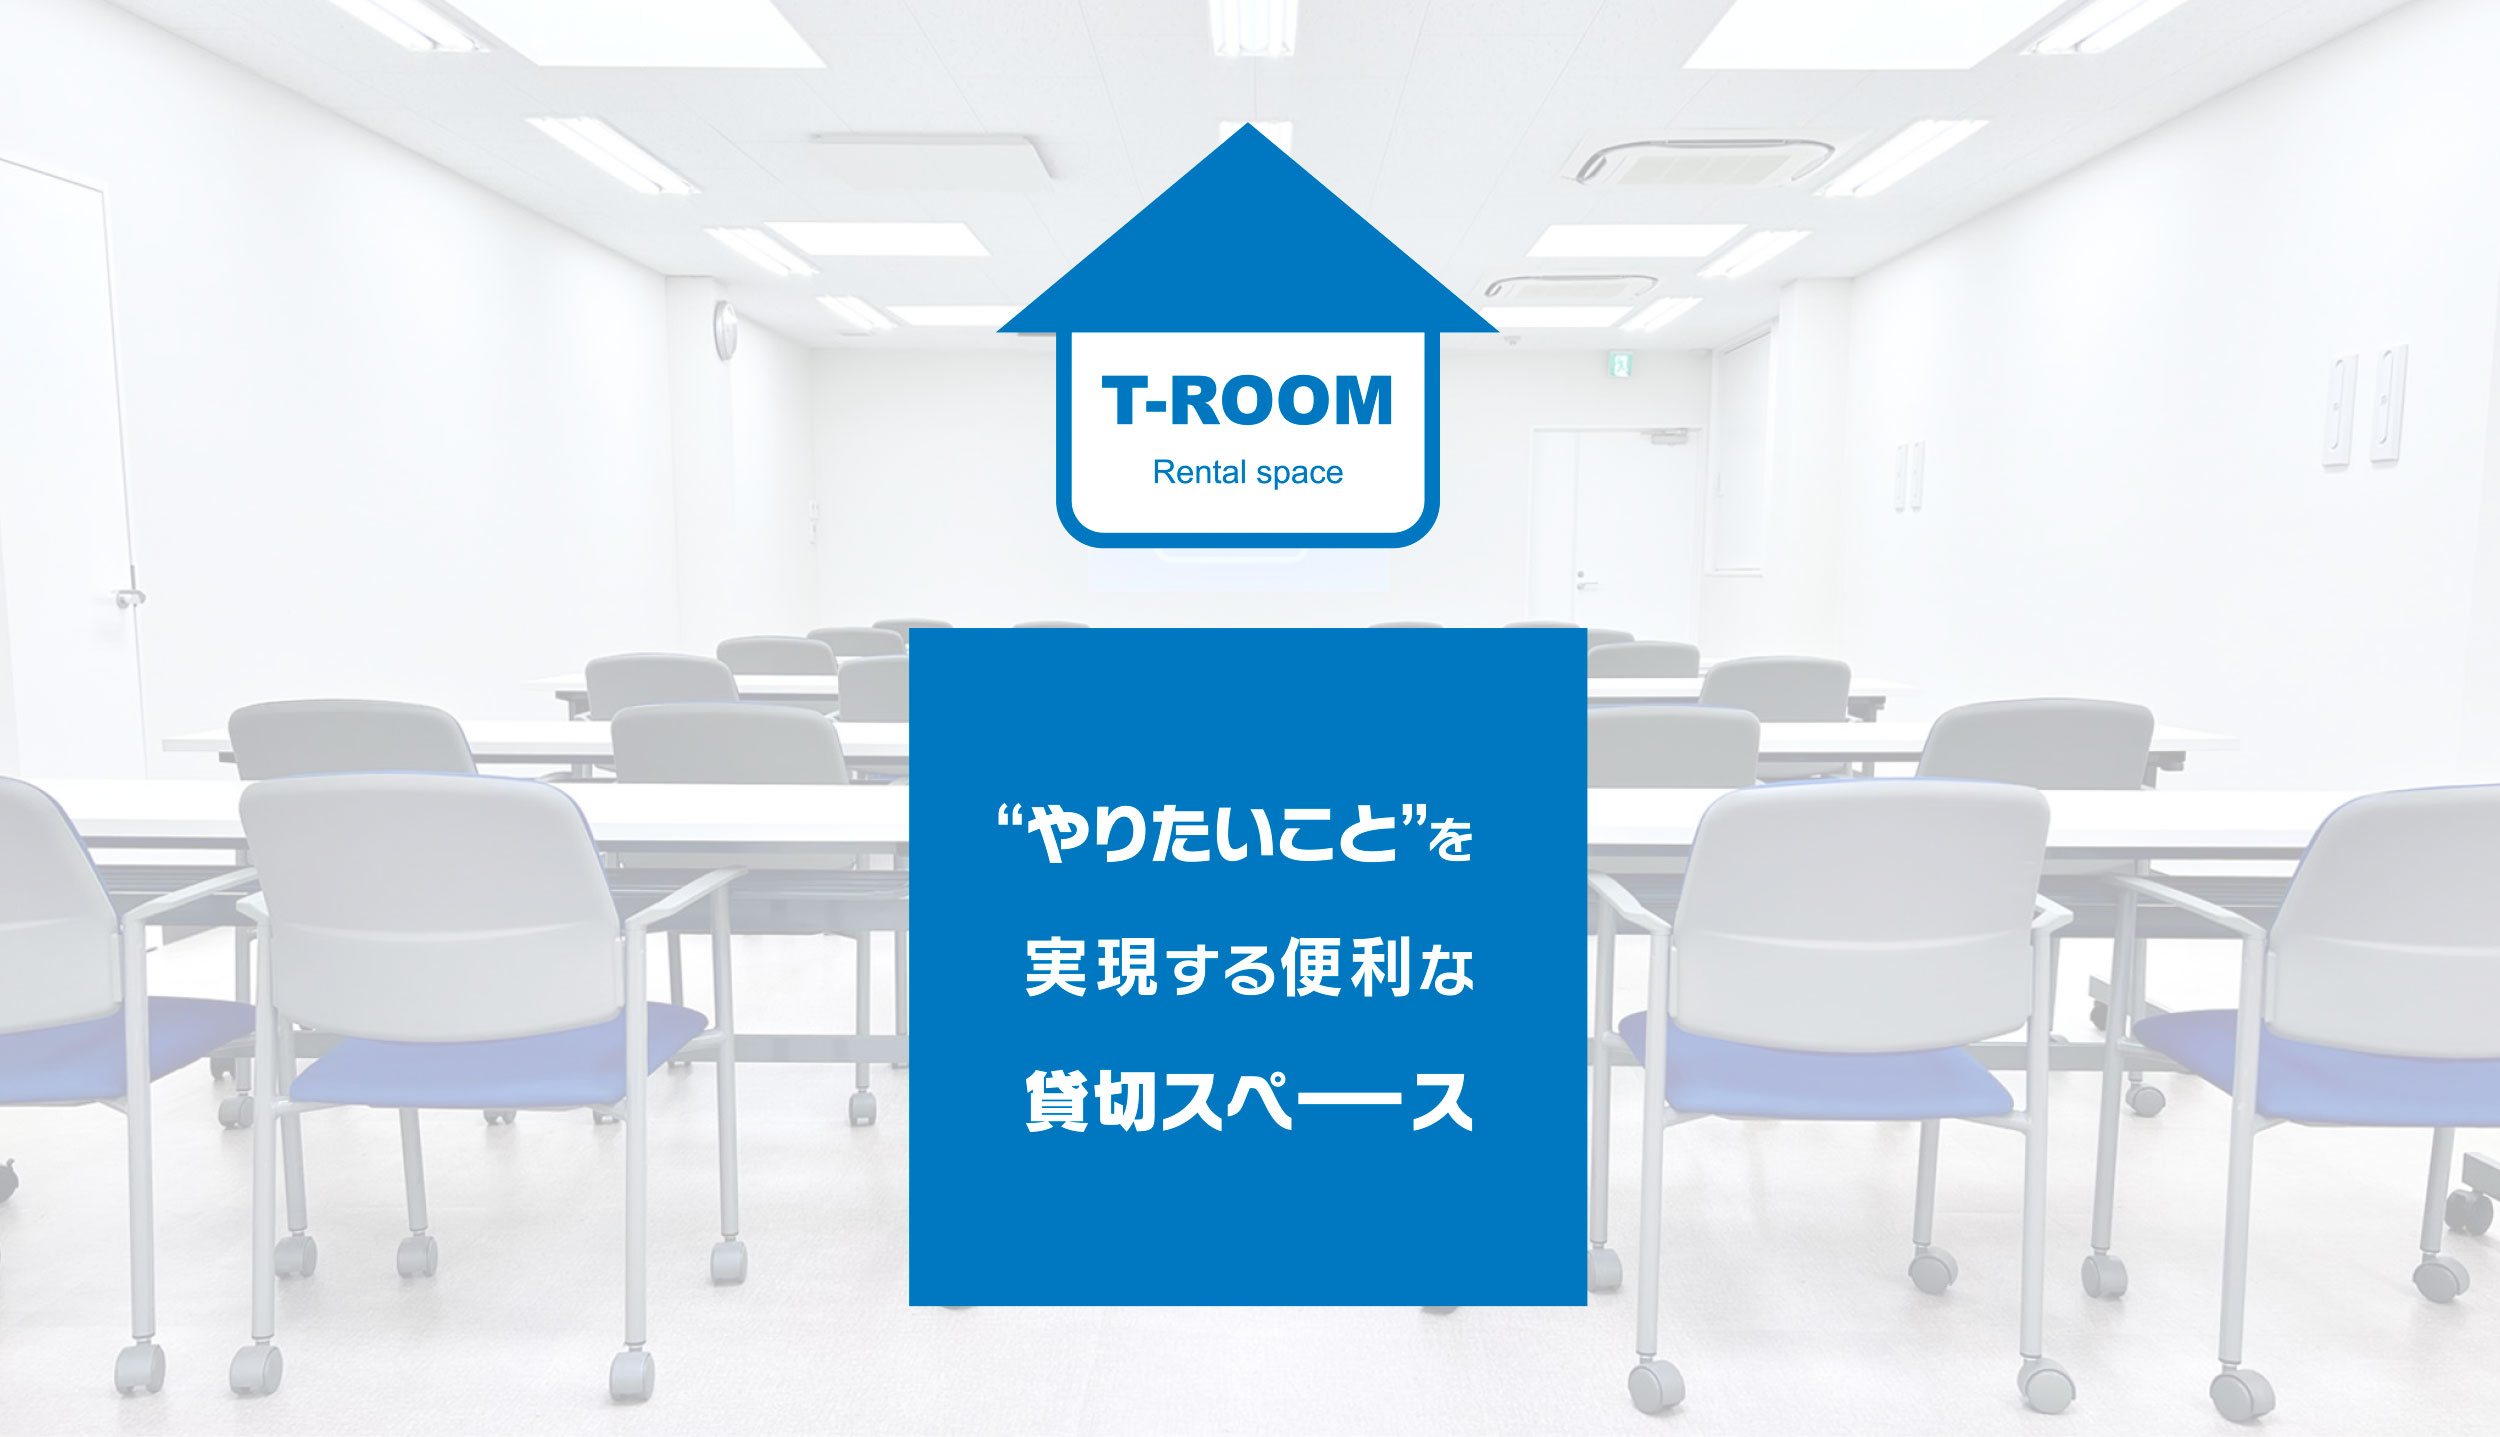 T-ROOM Rental space “やりたいこと”を<br>実現する便利な<br>貸切スペース